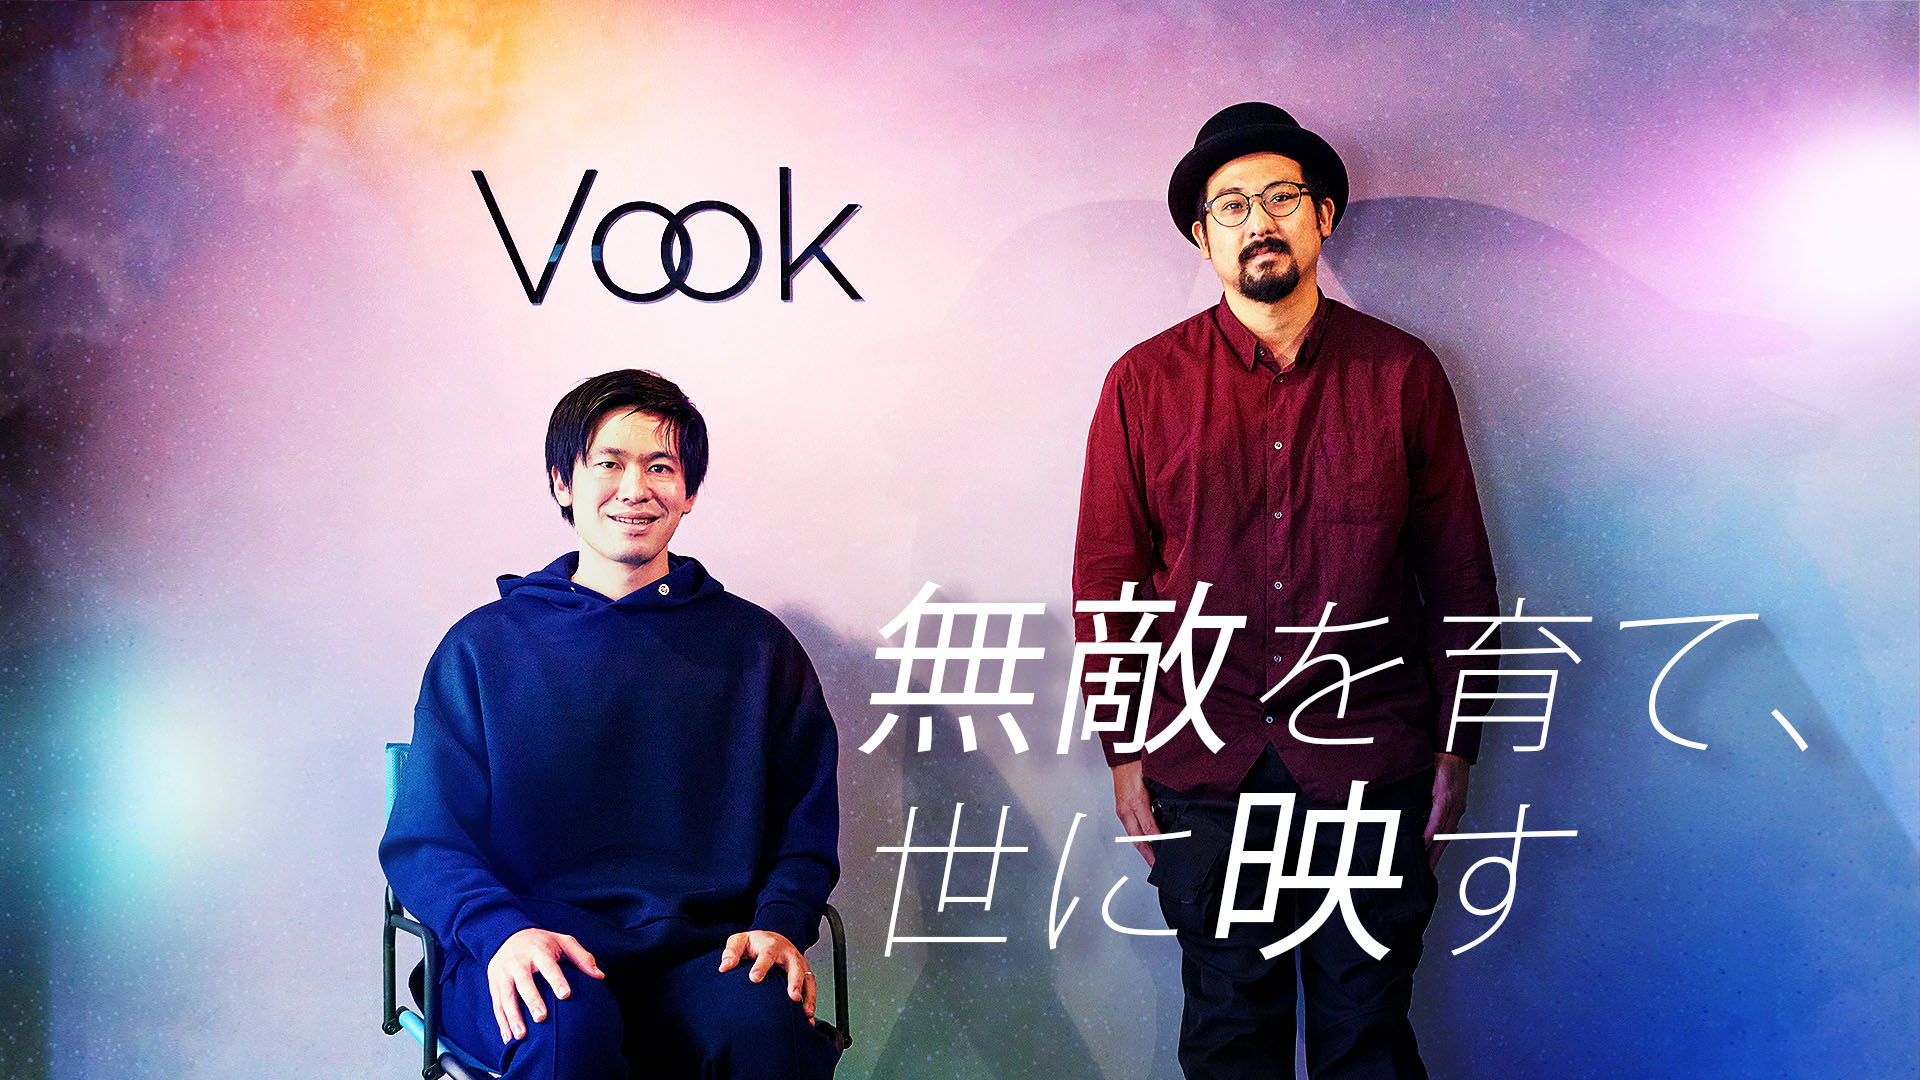 世界に通用する映像・動画クリエイターを全力で育成。「Vook School」岡本俊太郎と曽根隼人が映し出す新たなクリエイター像